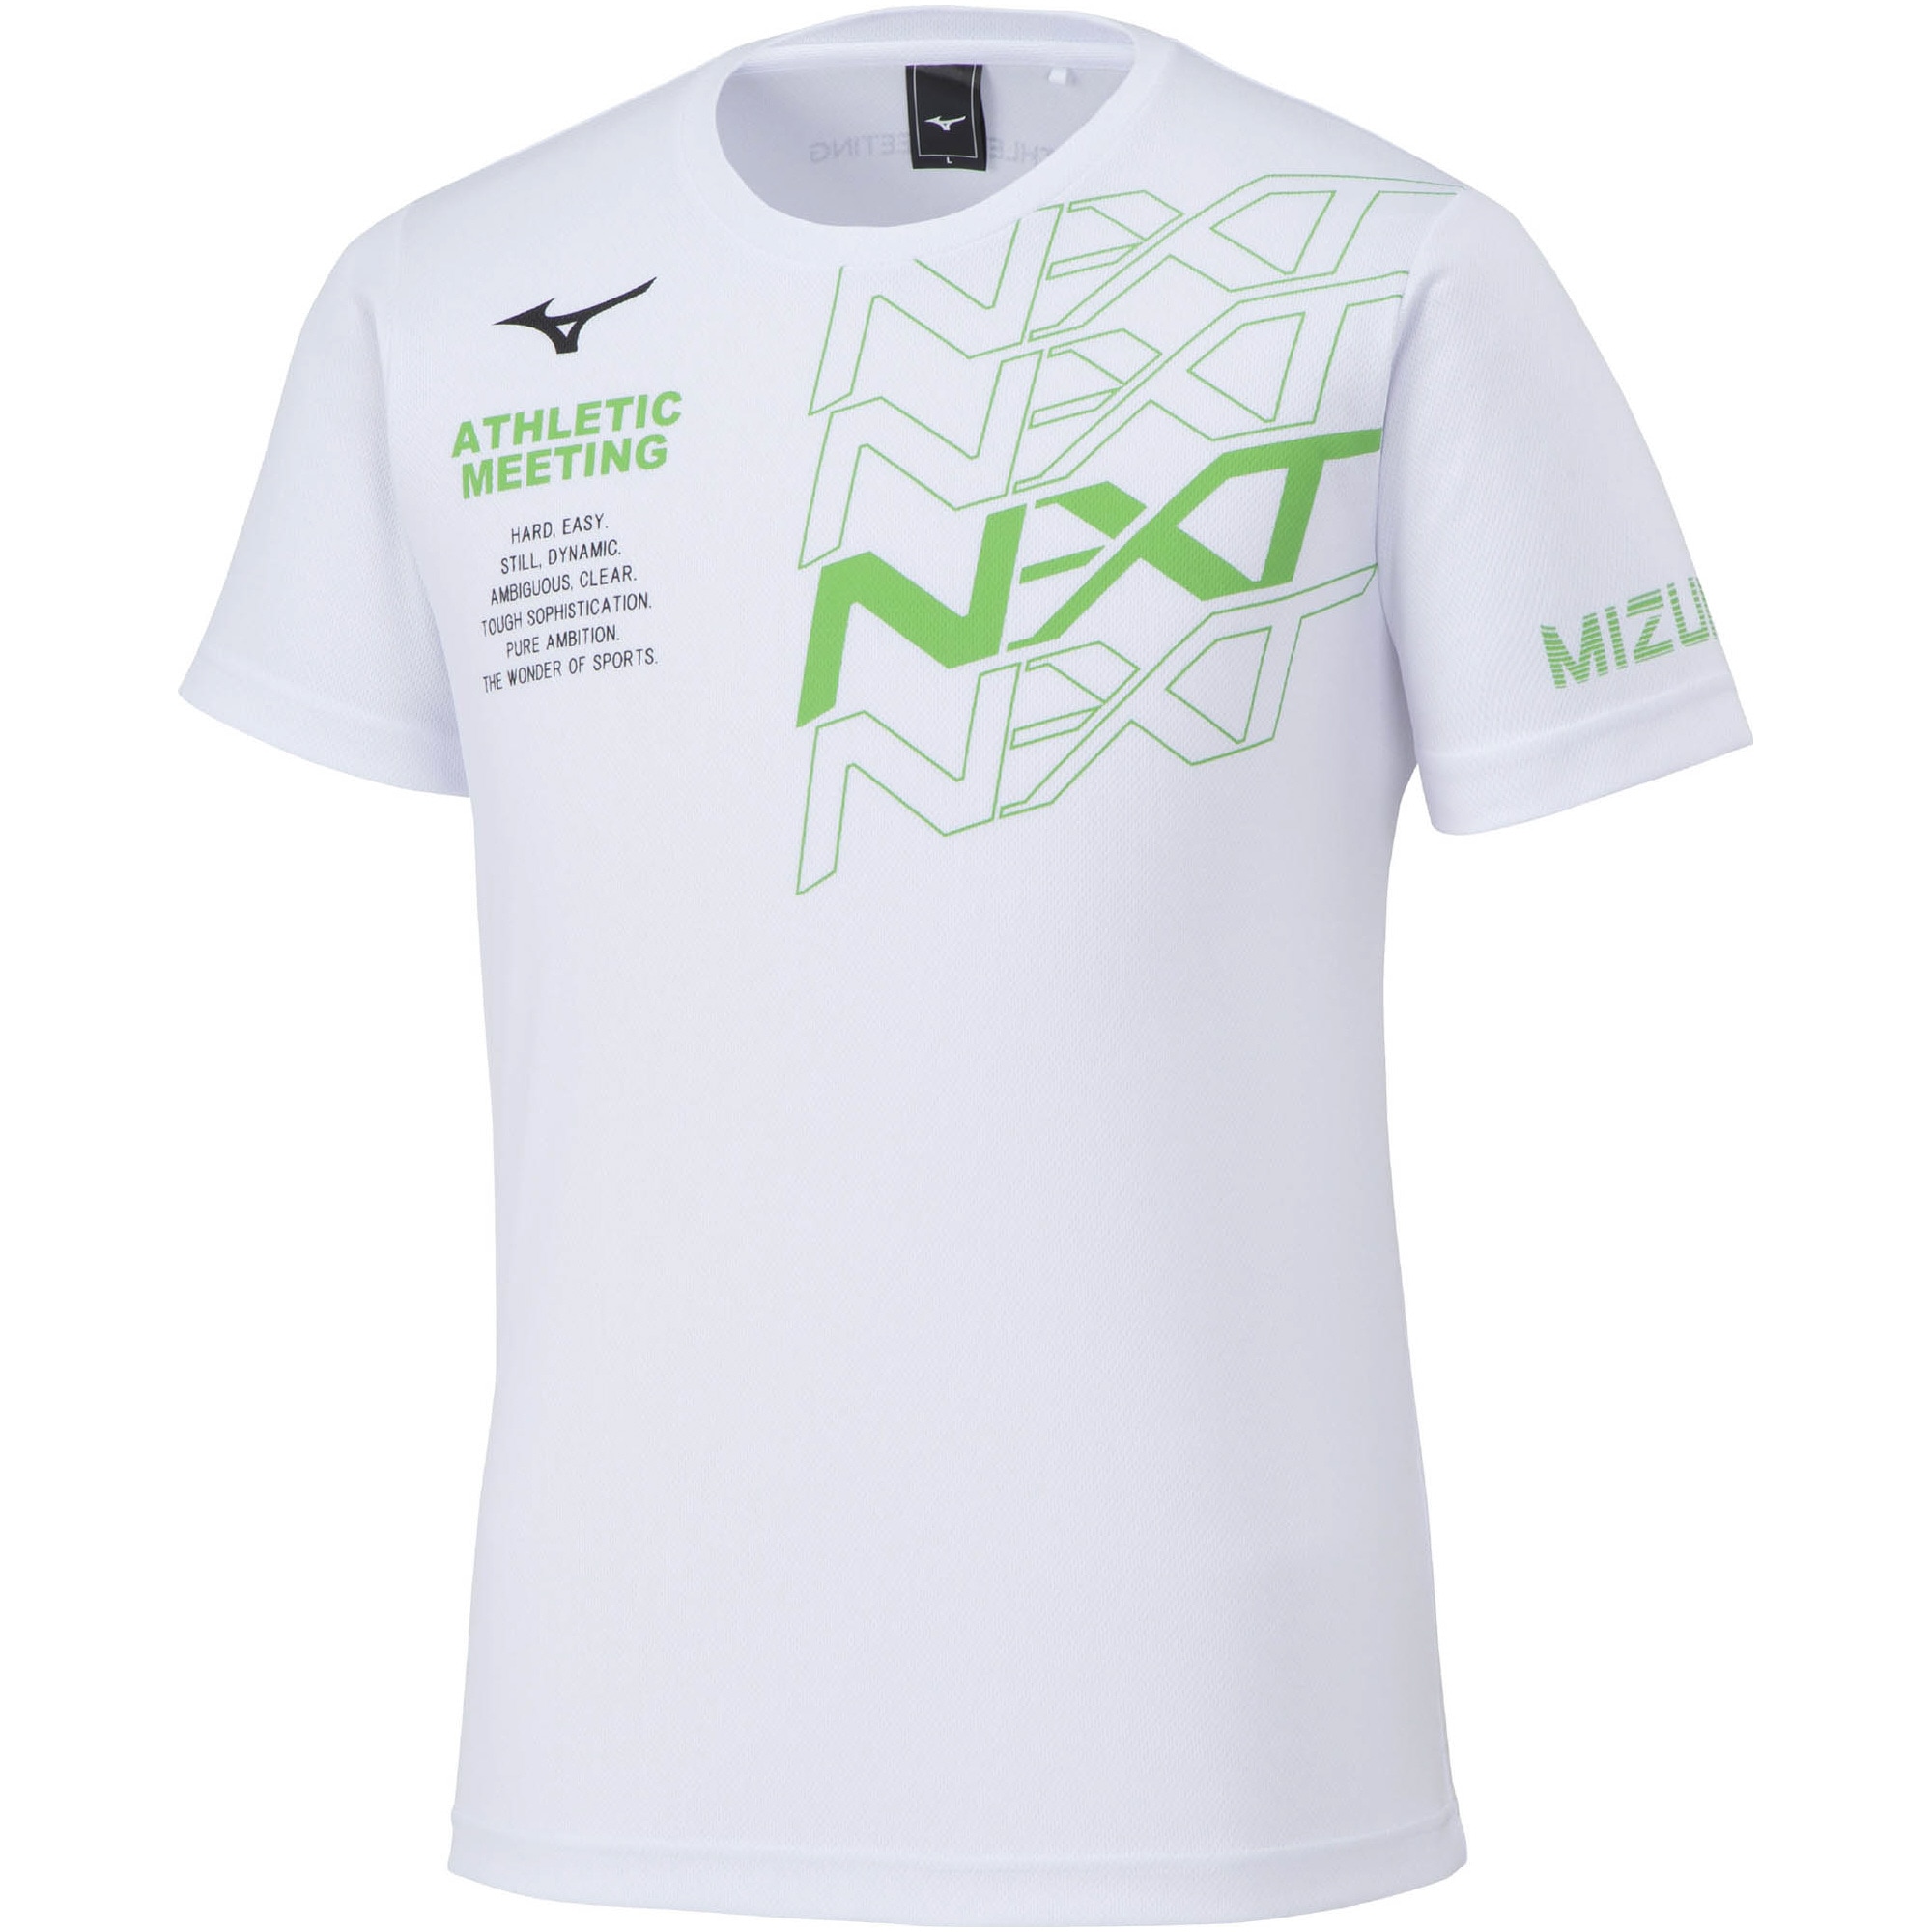 大会記念N-XT Tシャツ[ユニセックス]|32JAV211|ミズノトレーニング 